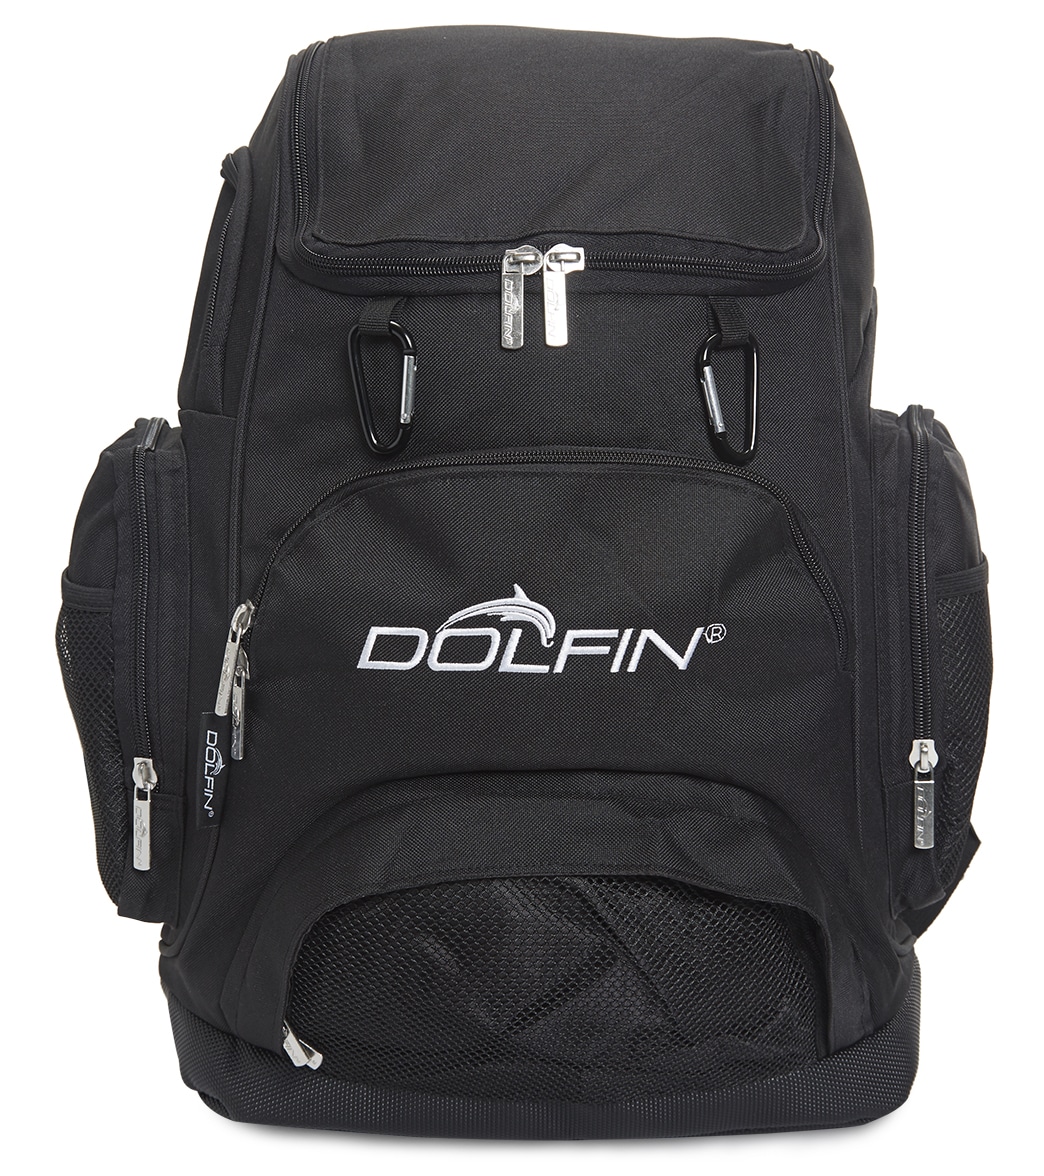 Dolfin Large Backpack - Black Os - Swimoutlet.com